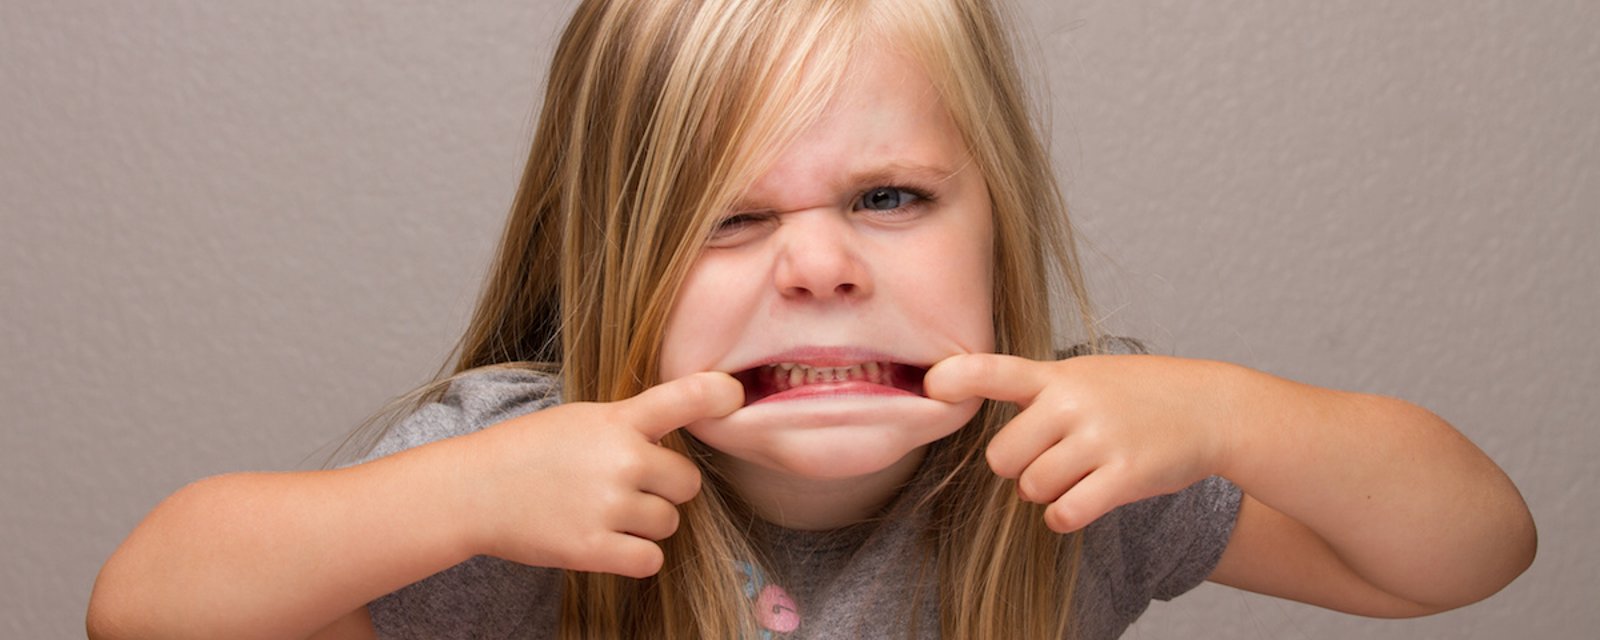 8 habitudes d’enfants qui sont ennuyantes, mais qui sont en réalité normales!